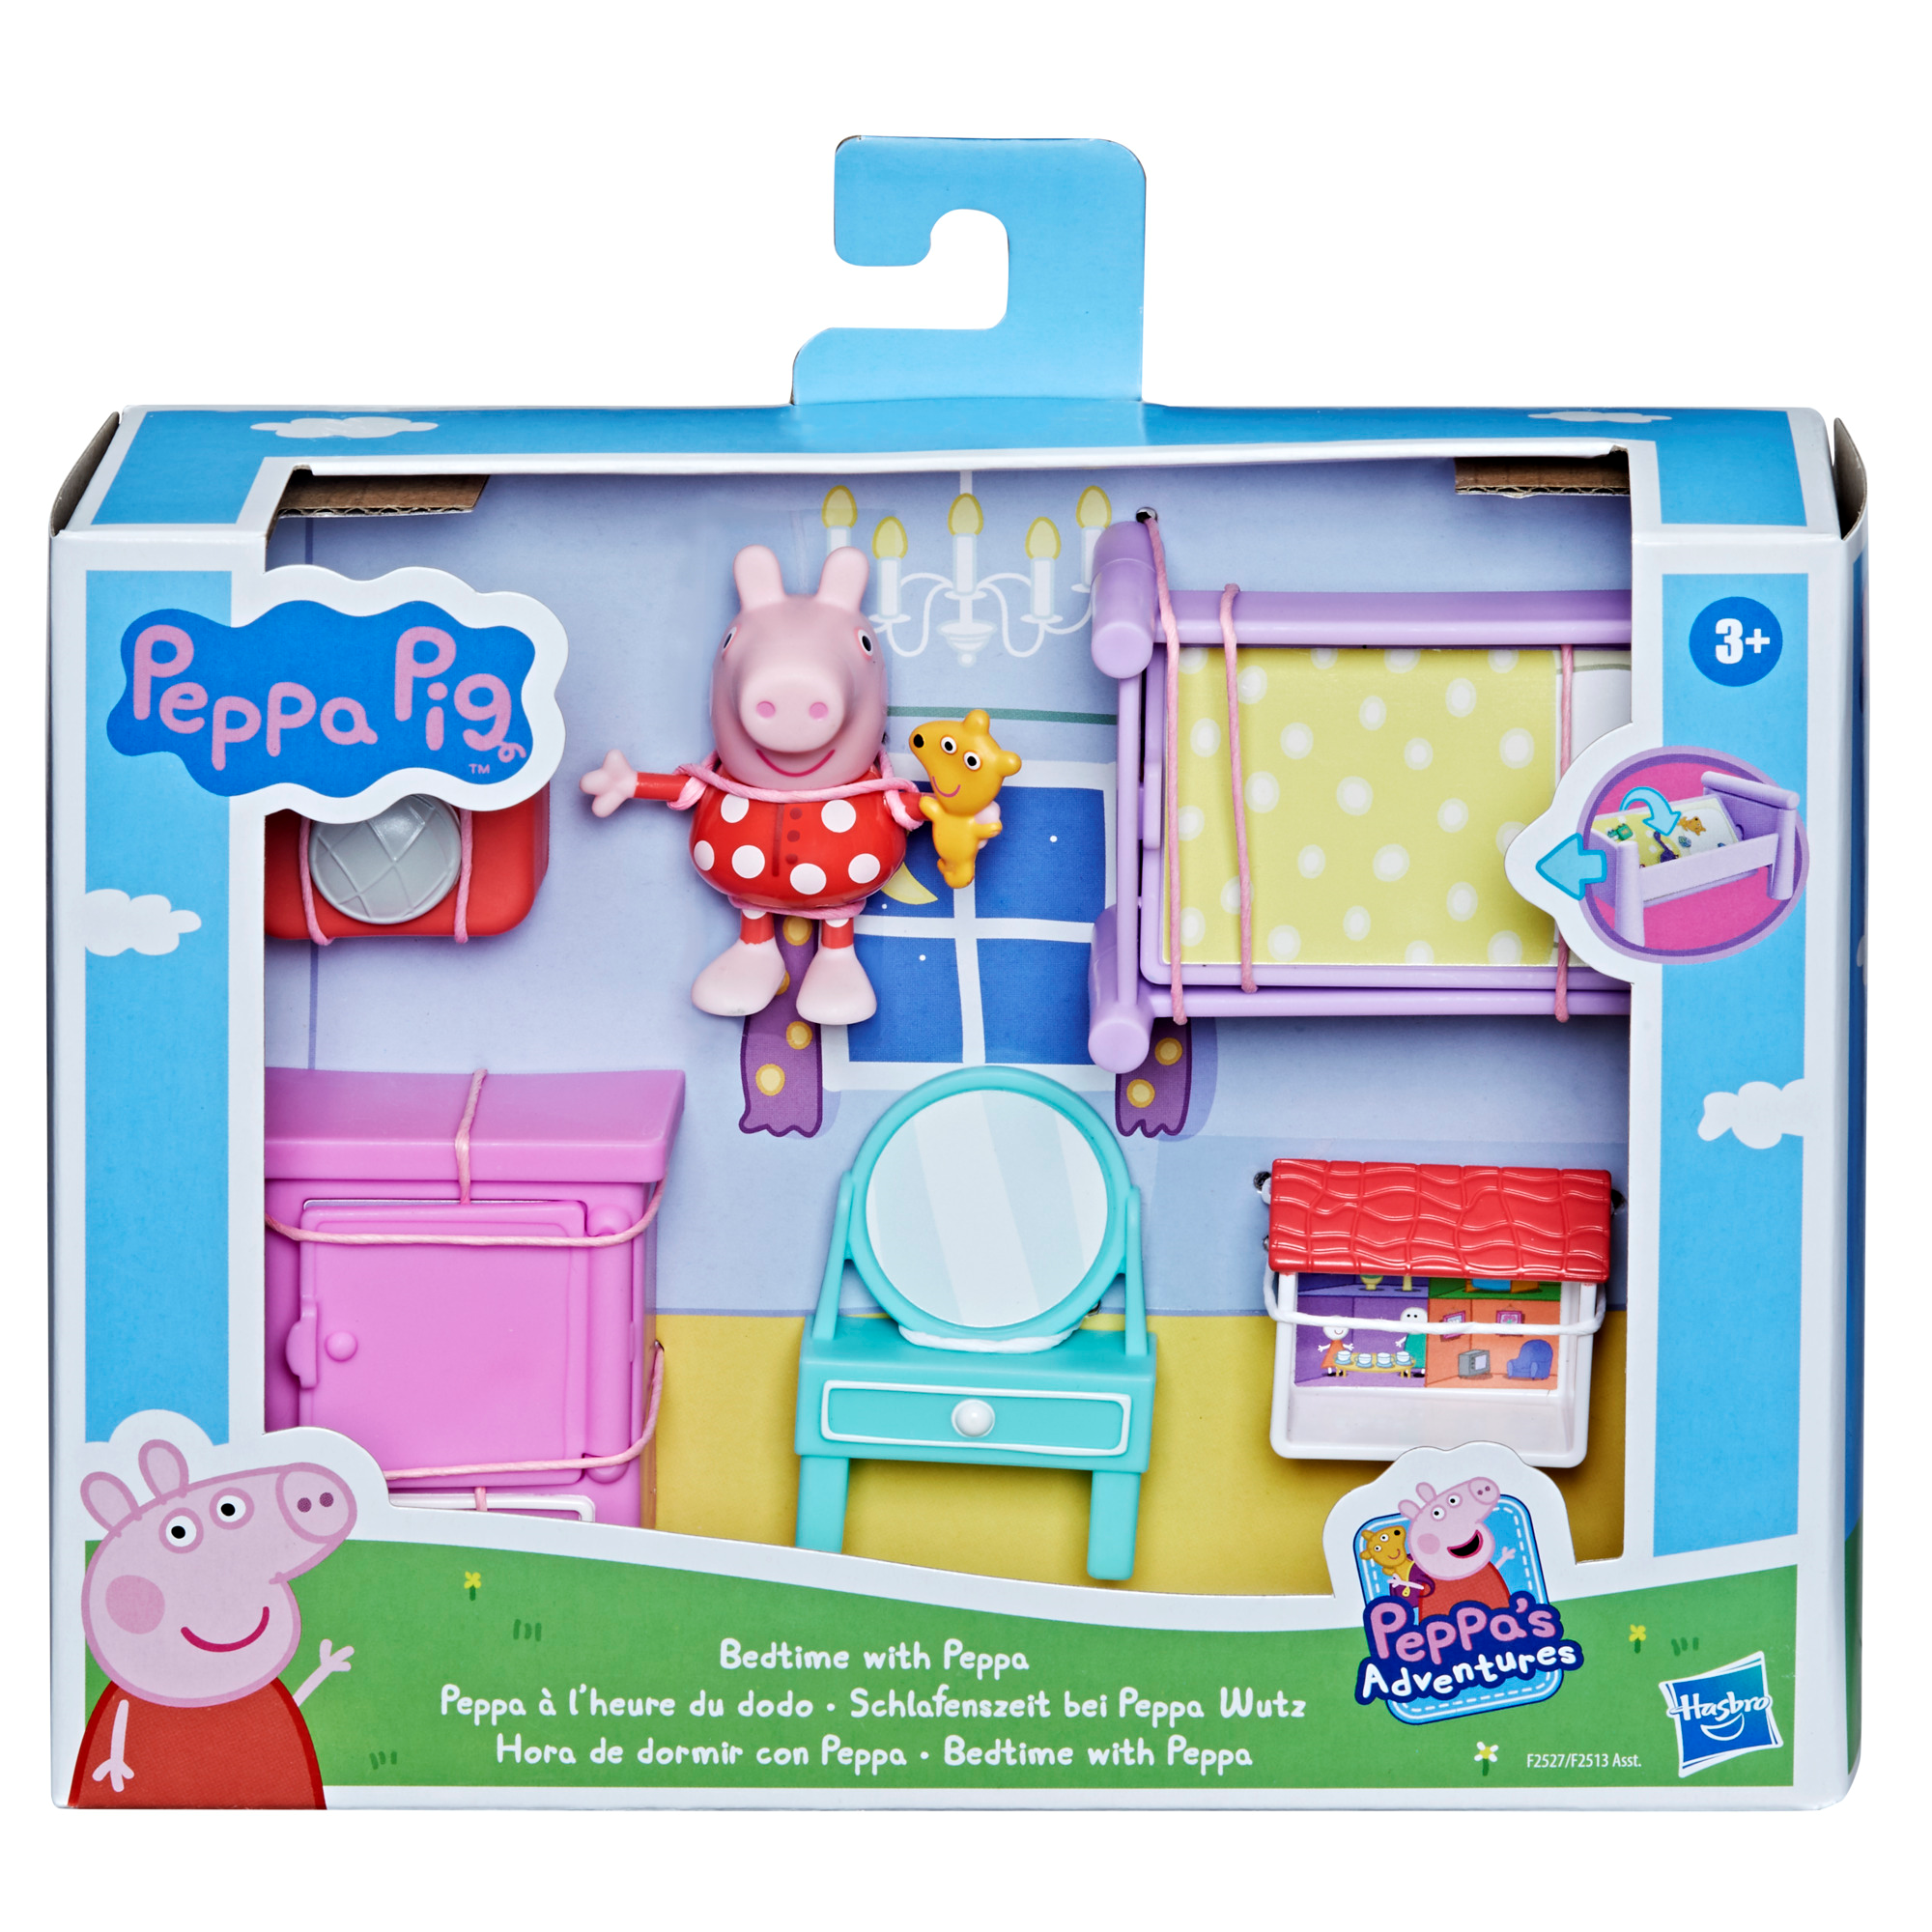 Peppa pig - gli spazi di peppa pig, set di accessori giocattolo con il personaggio di peppa pig e 5 accessori, per bambini dai 3 anni in su - PEPPA PIG